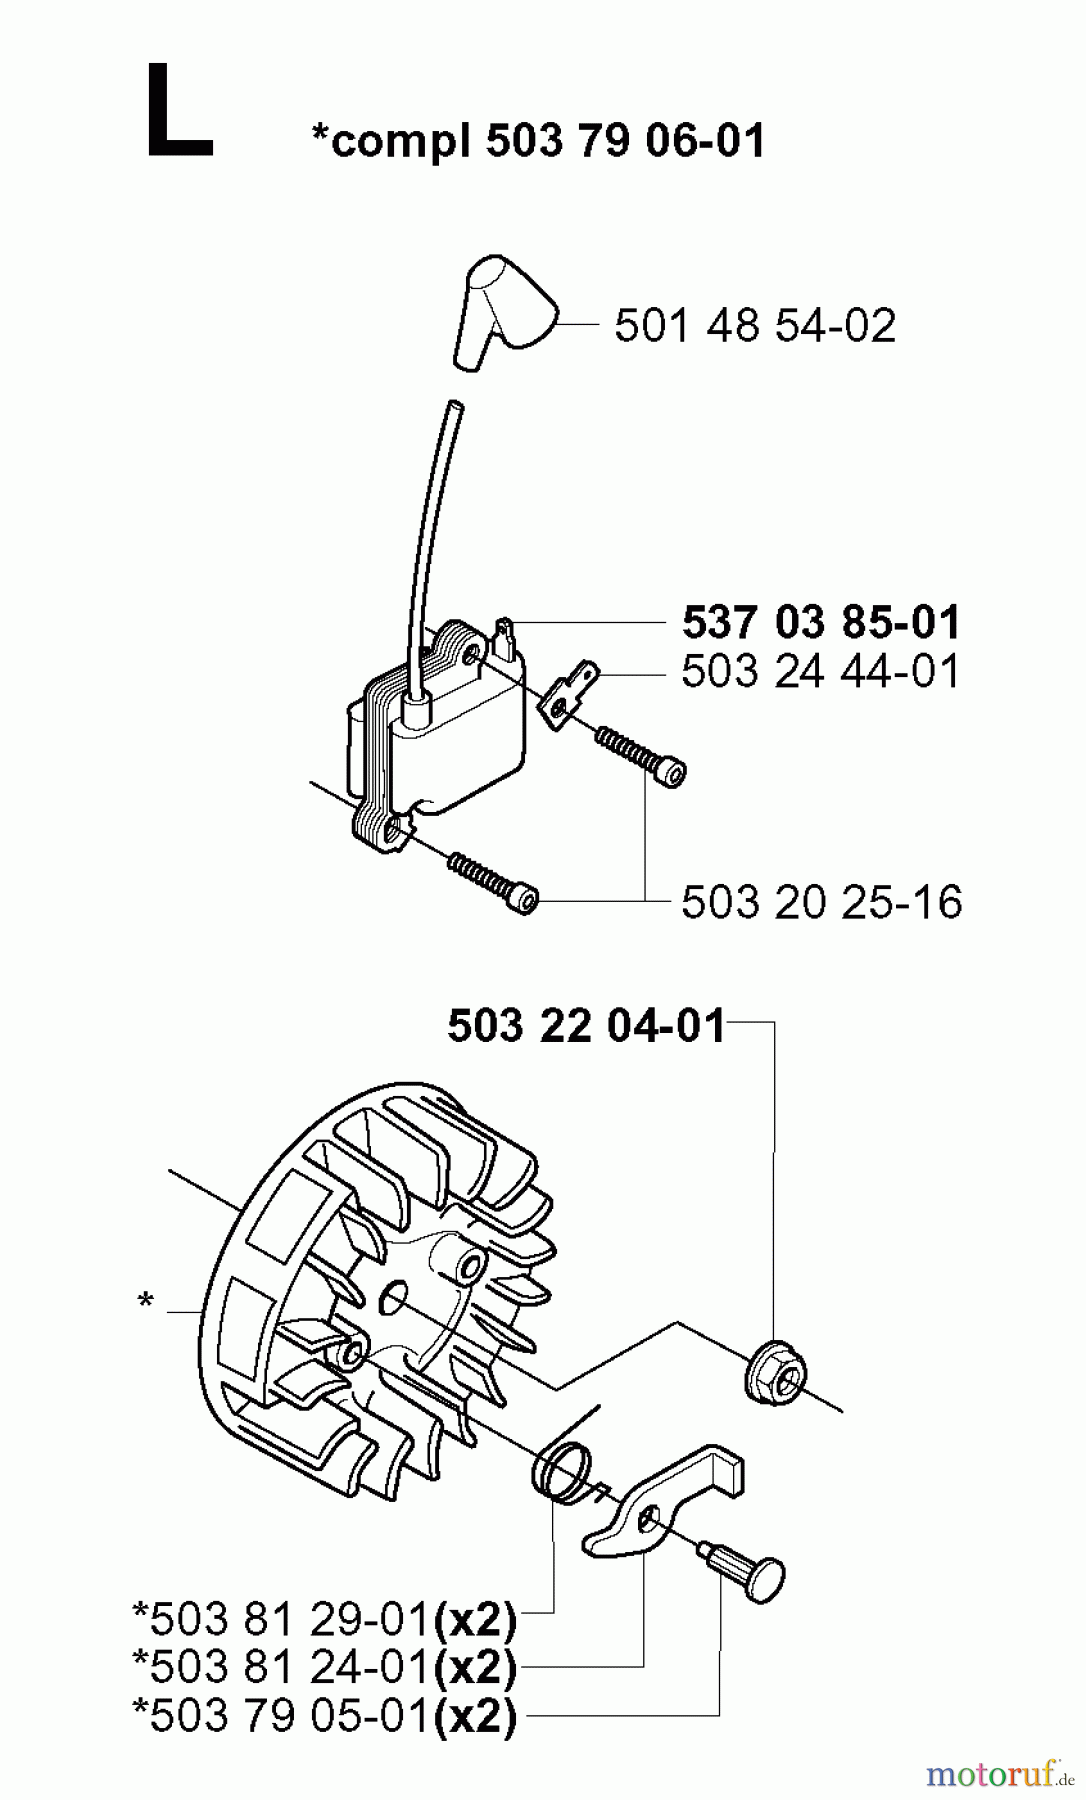  Jonsered Motorsensen, Trimmer GR2036 - Jonsered String/Brush Trimmer (2000-10) IGNITION SYSTEM